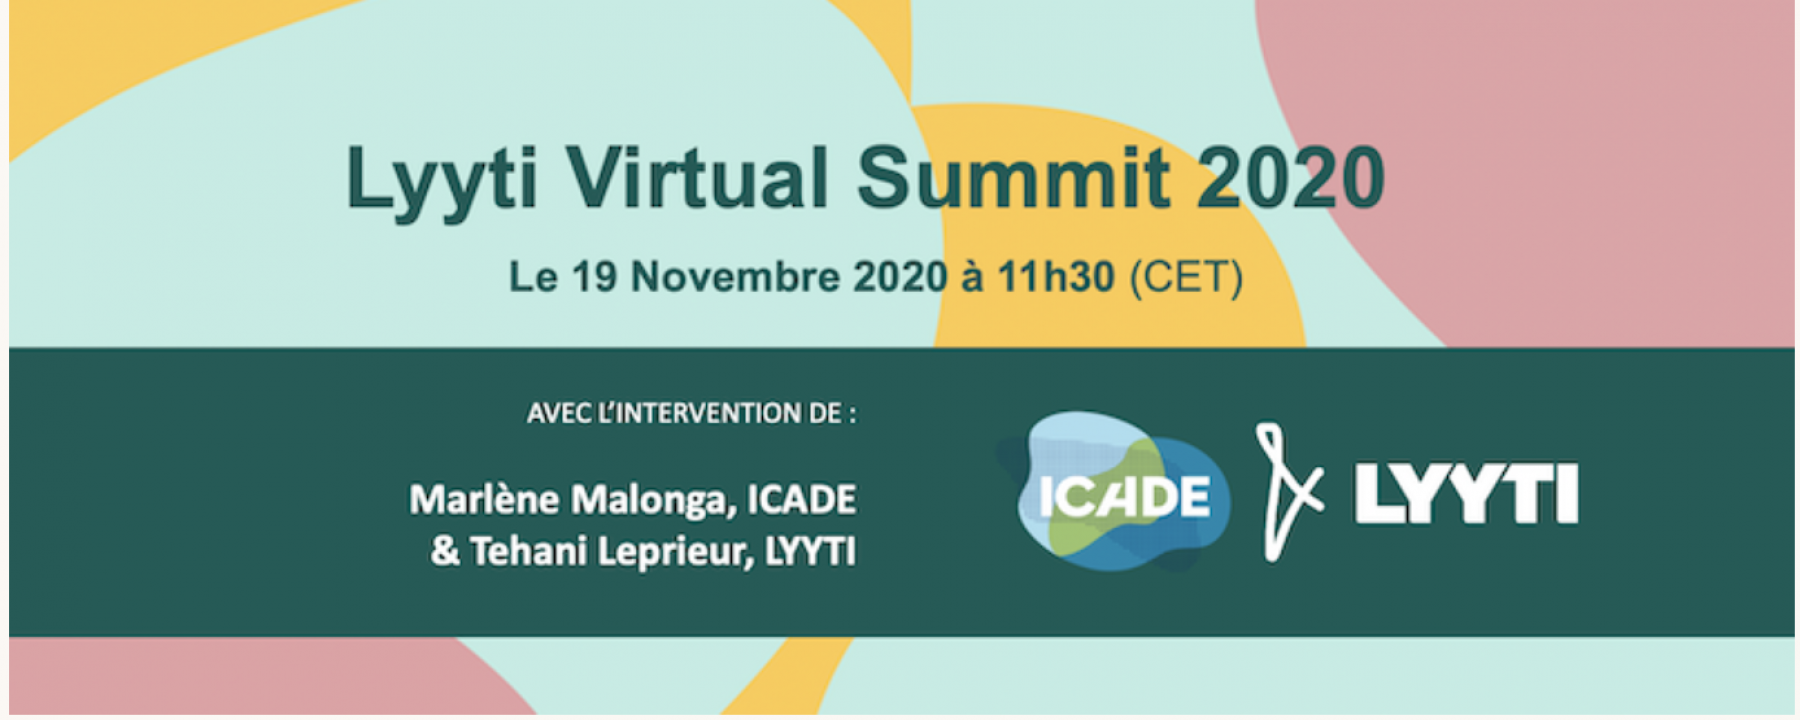 Lyyti Virtual Summit, organisé par Lytti le 19 novembre 